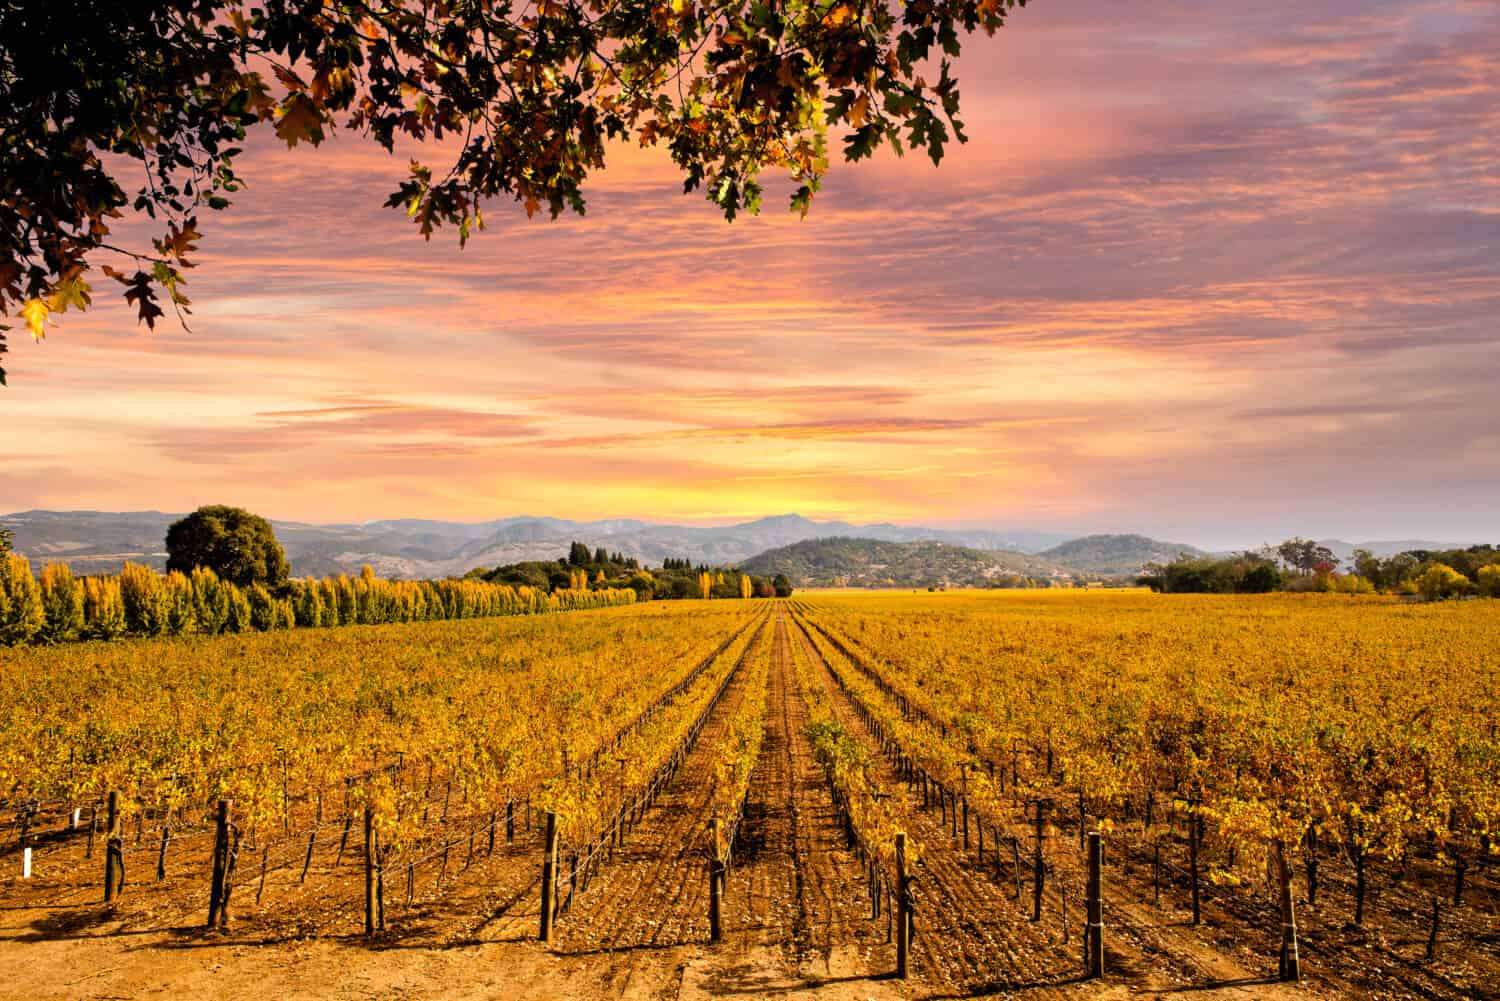 Bellissimo cielo al tramonto nella regione vinicola della Napa Valley sui vigneti autunnali, sulle montagne.